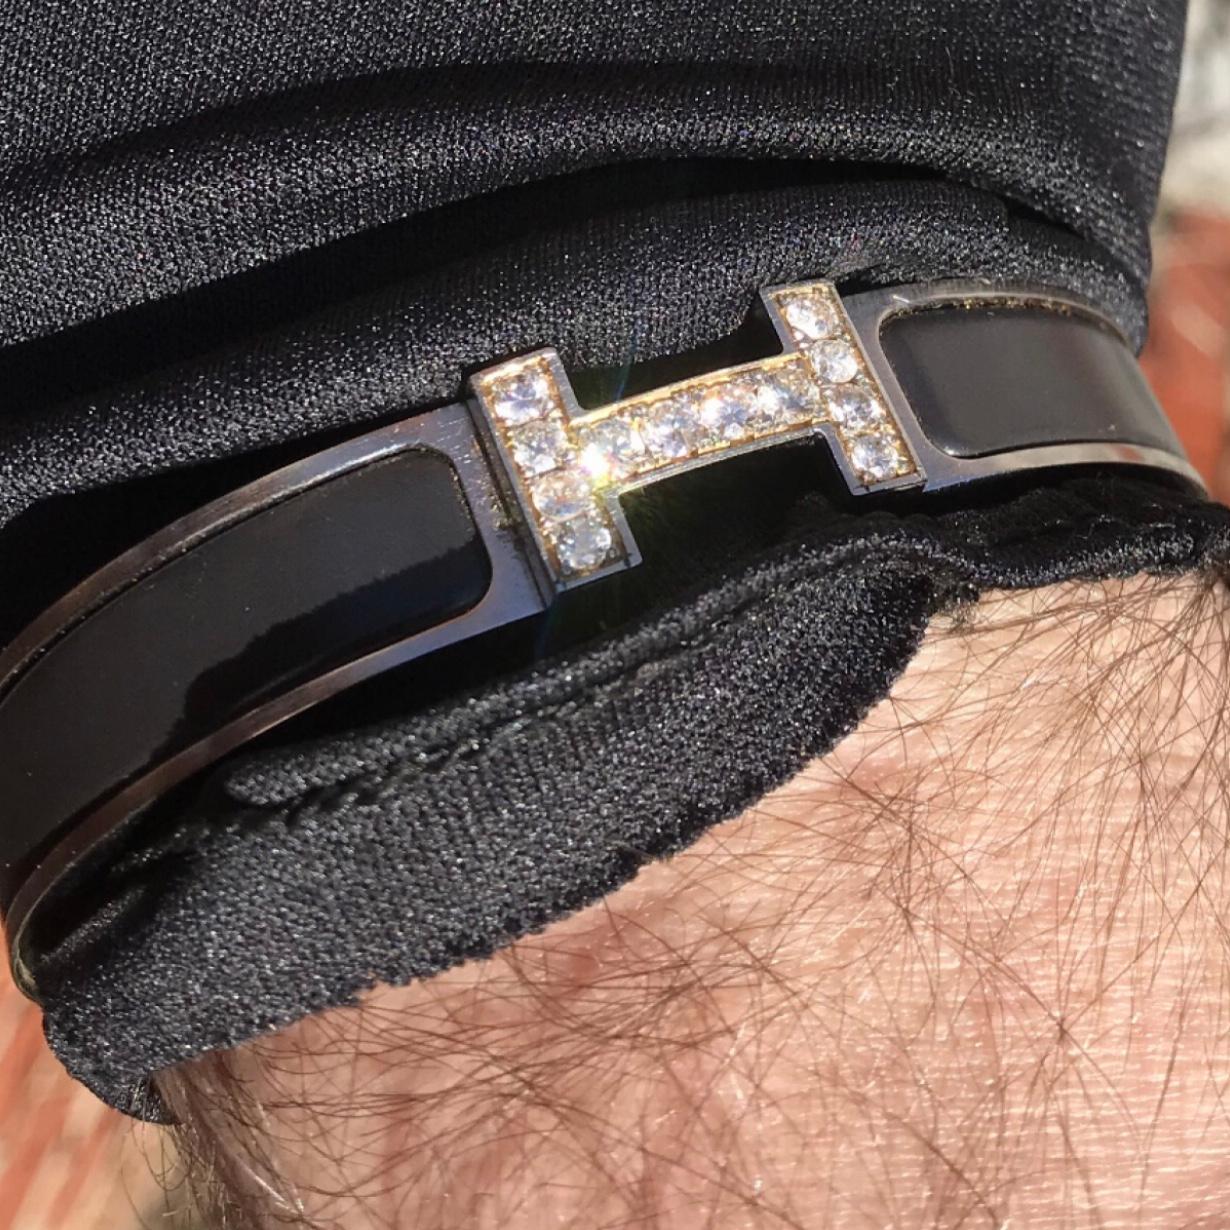 Custom Diamond Hermes Clic H Emaille Armband GM Größe komplett mit Originalverpackung.

Ein originales Hermes Clic H Armband in schwarz und silberner Farbe ist mit ca. 1,25 Karat natürlichen, echten, erdgeschliffenen SI-Diamanten handbesetzt. Die